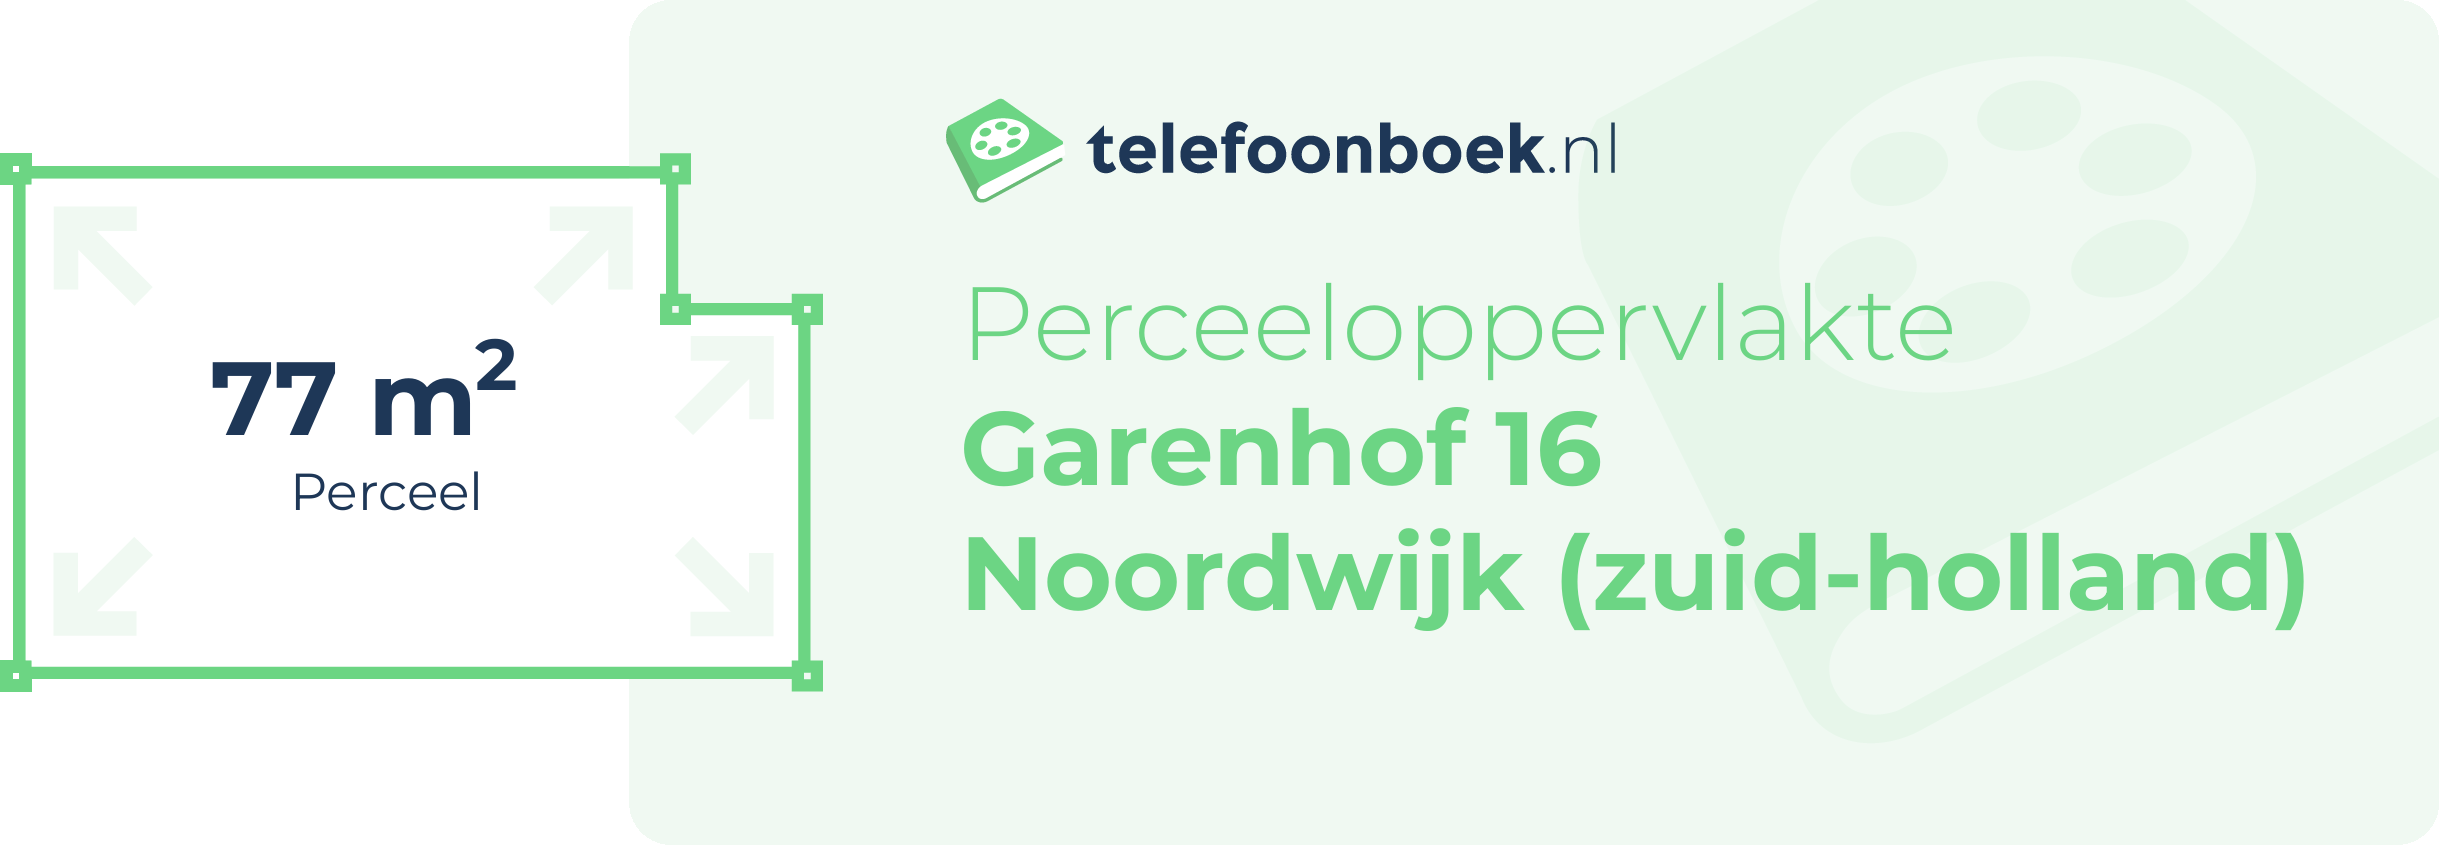 Perceeloppervlakte Garenhof 16 Noordwijk (Zuid-Holland)